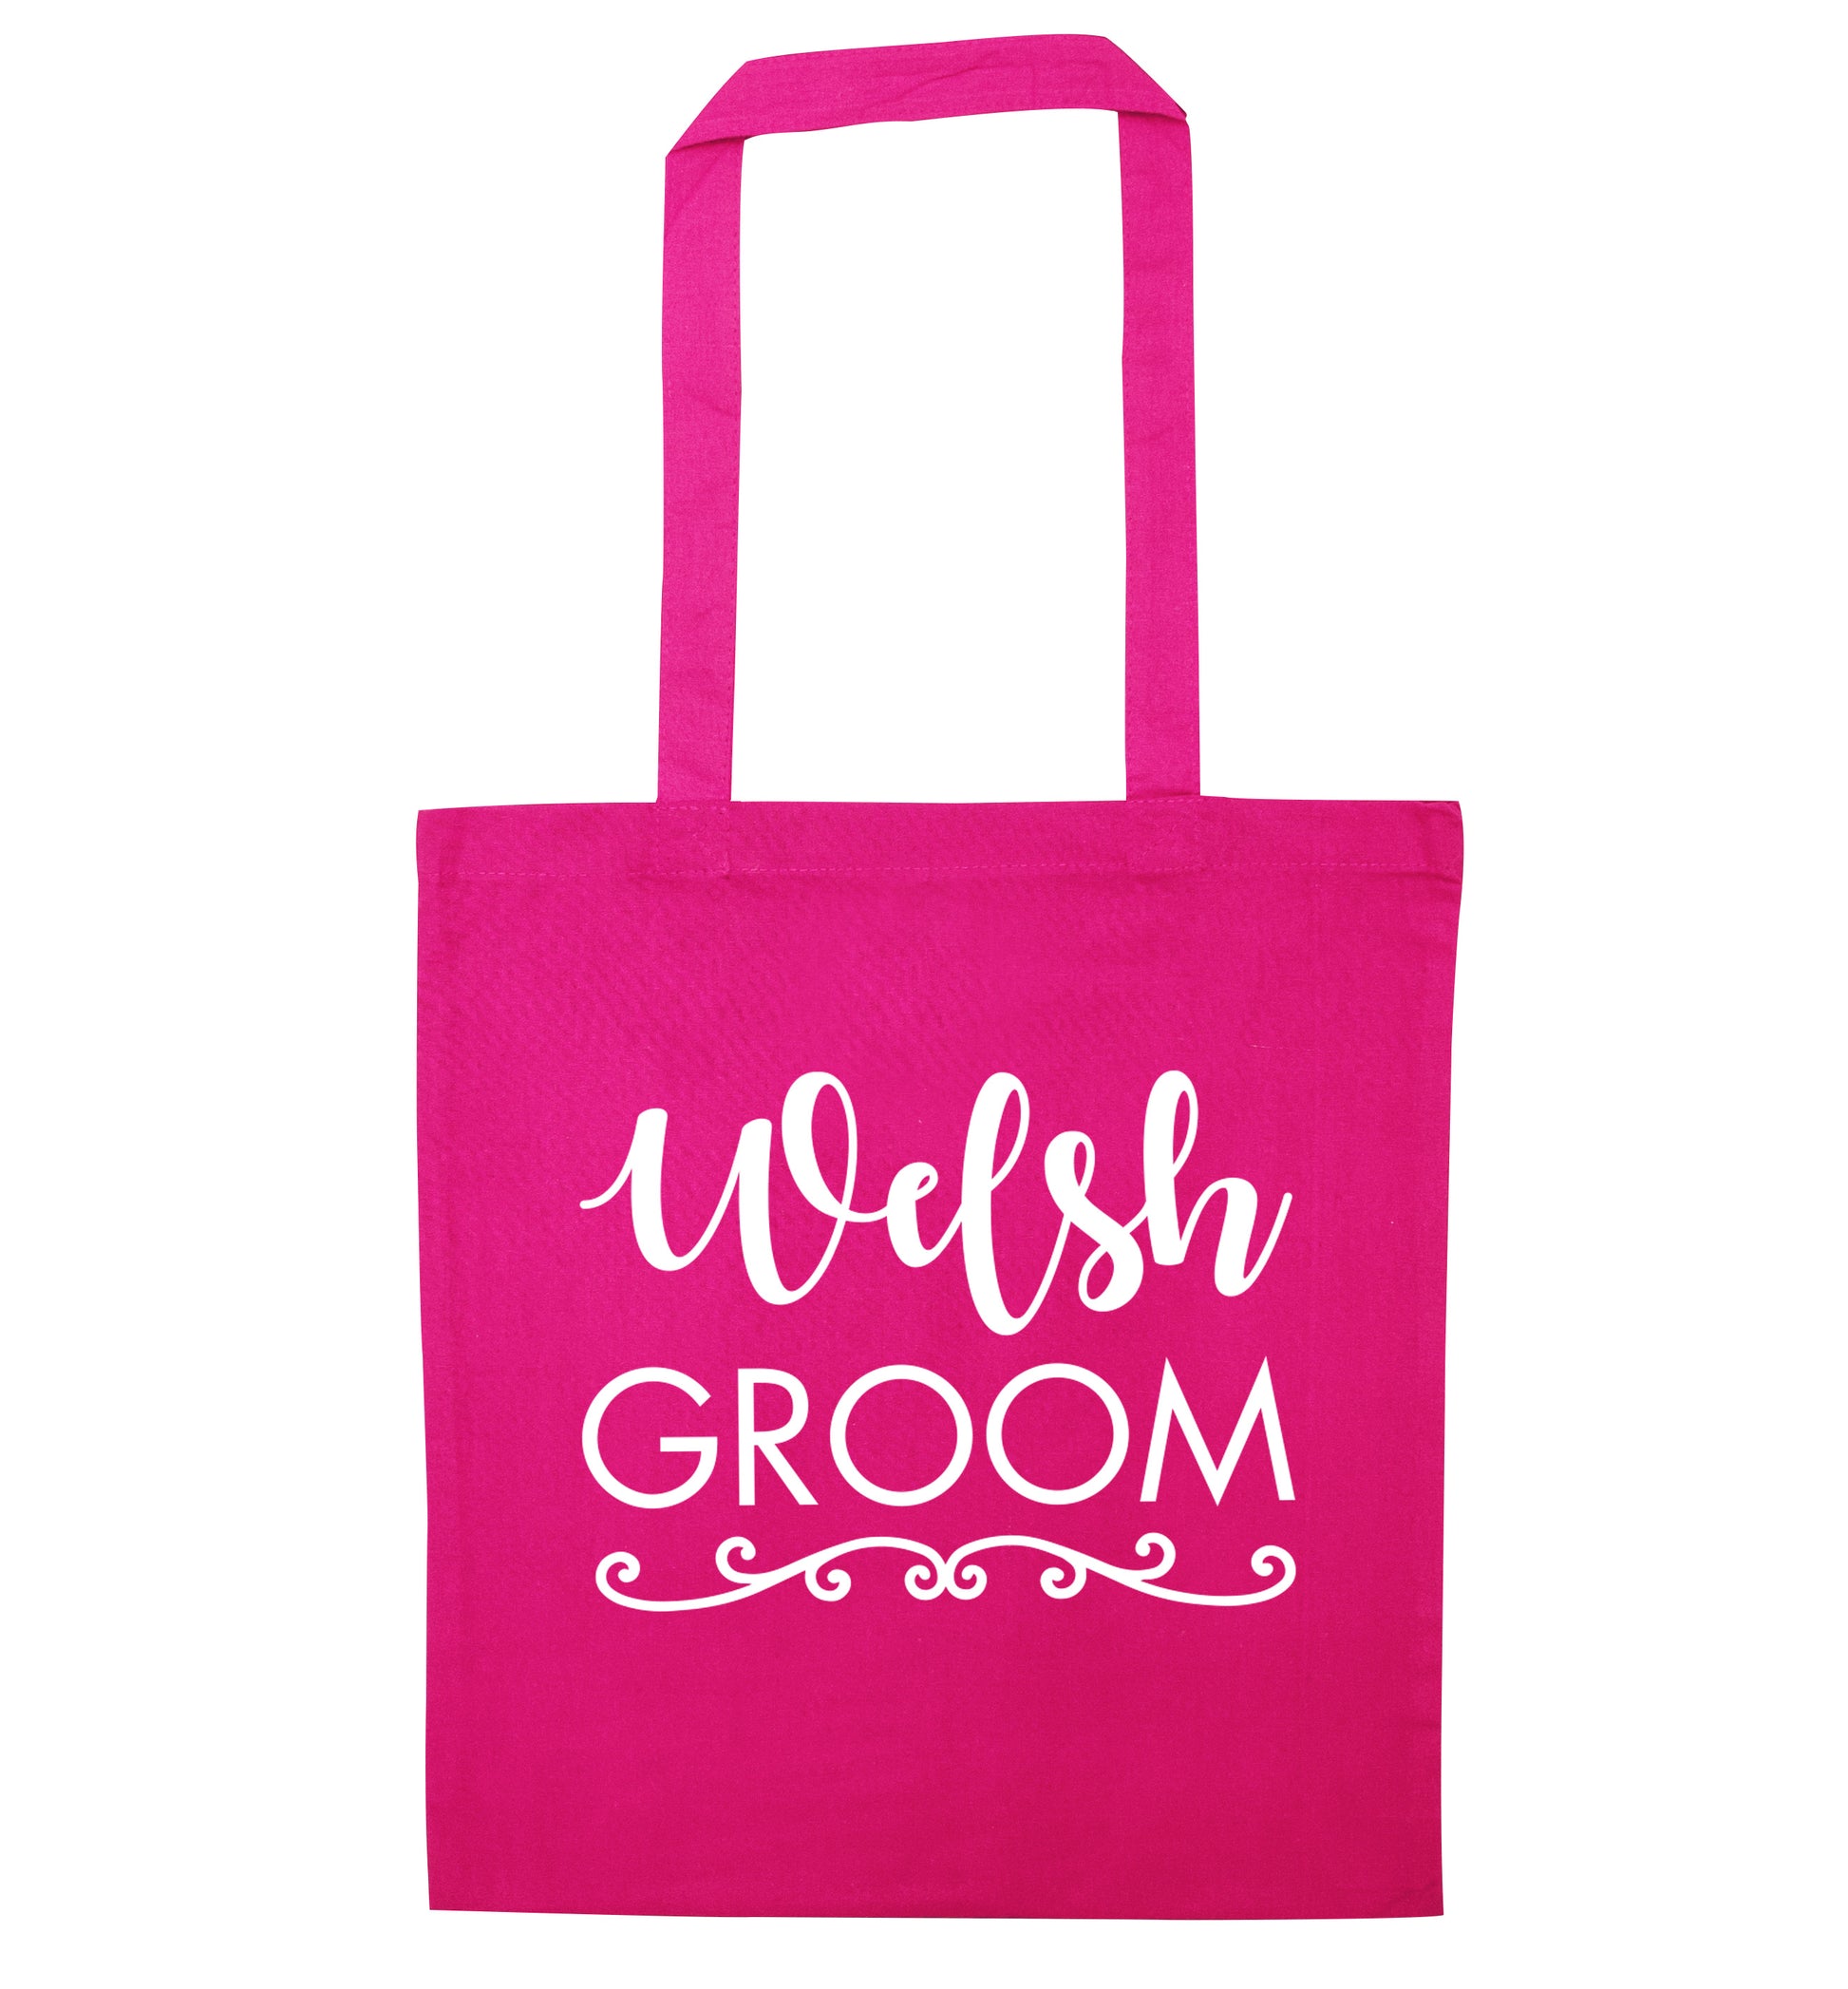 Welsh groom pink tote bag